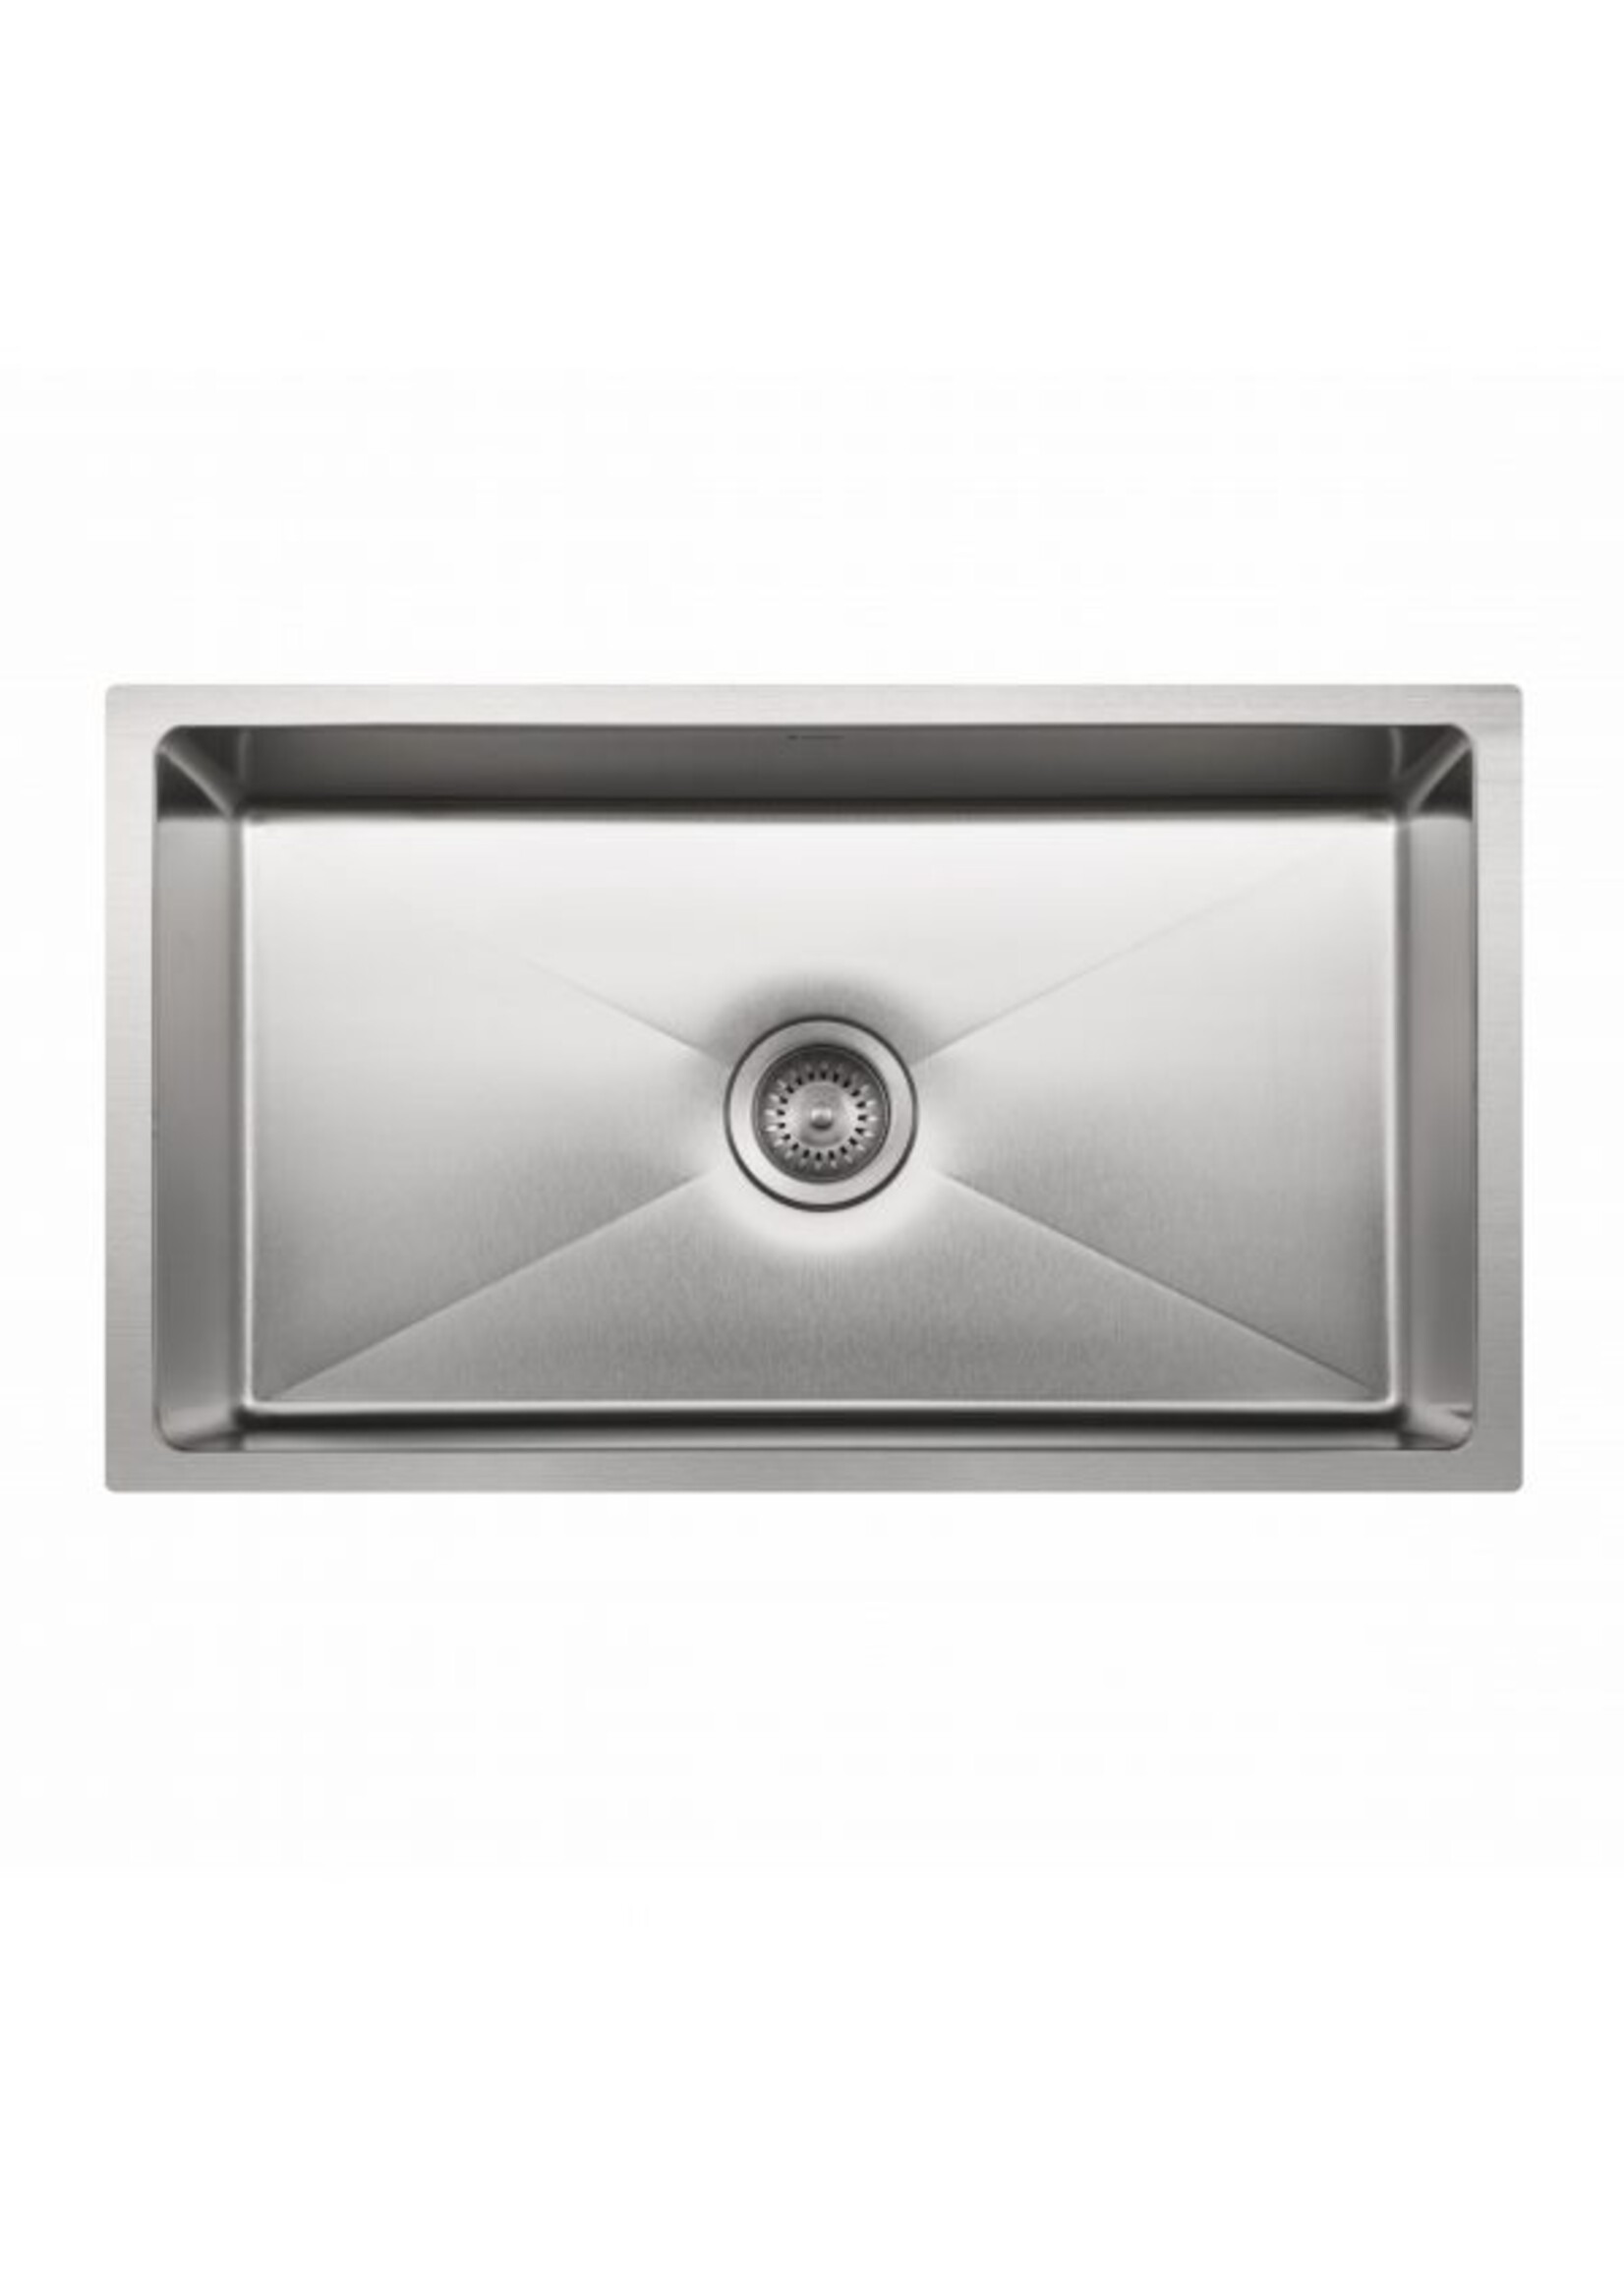 Hamat Hydrus 31x18 undermount 18 gauge stainless steel Large Kitchen Bowl Sink